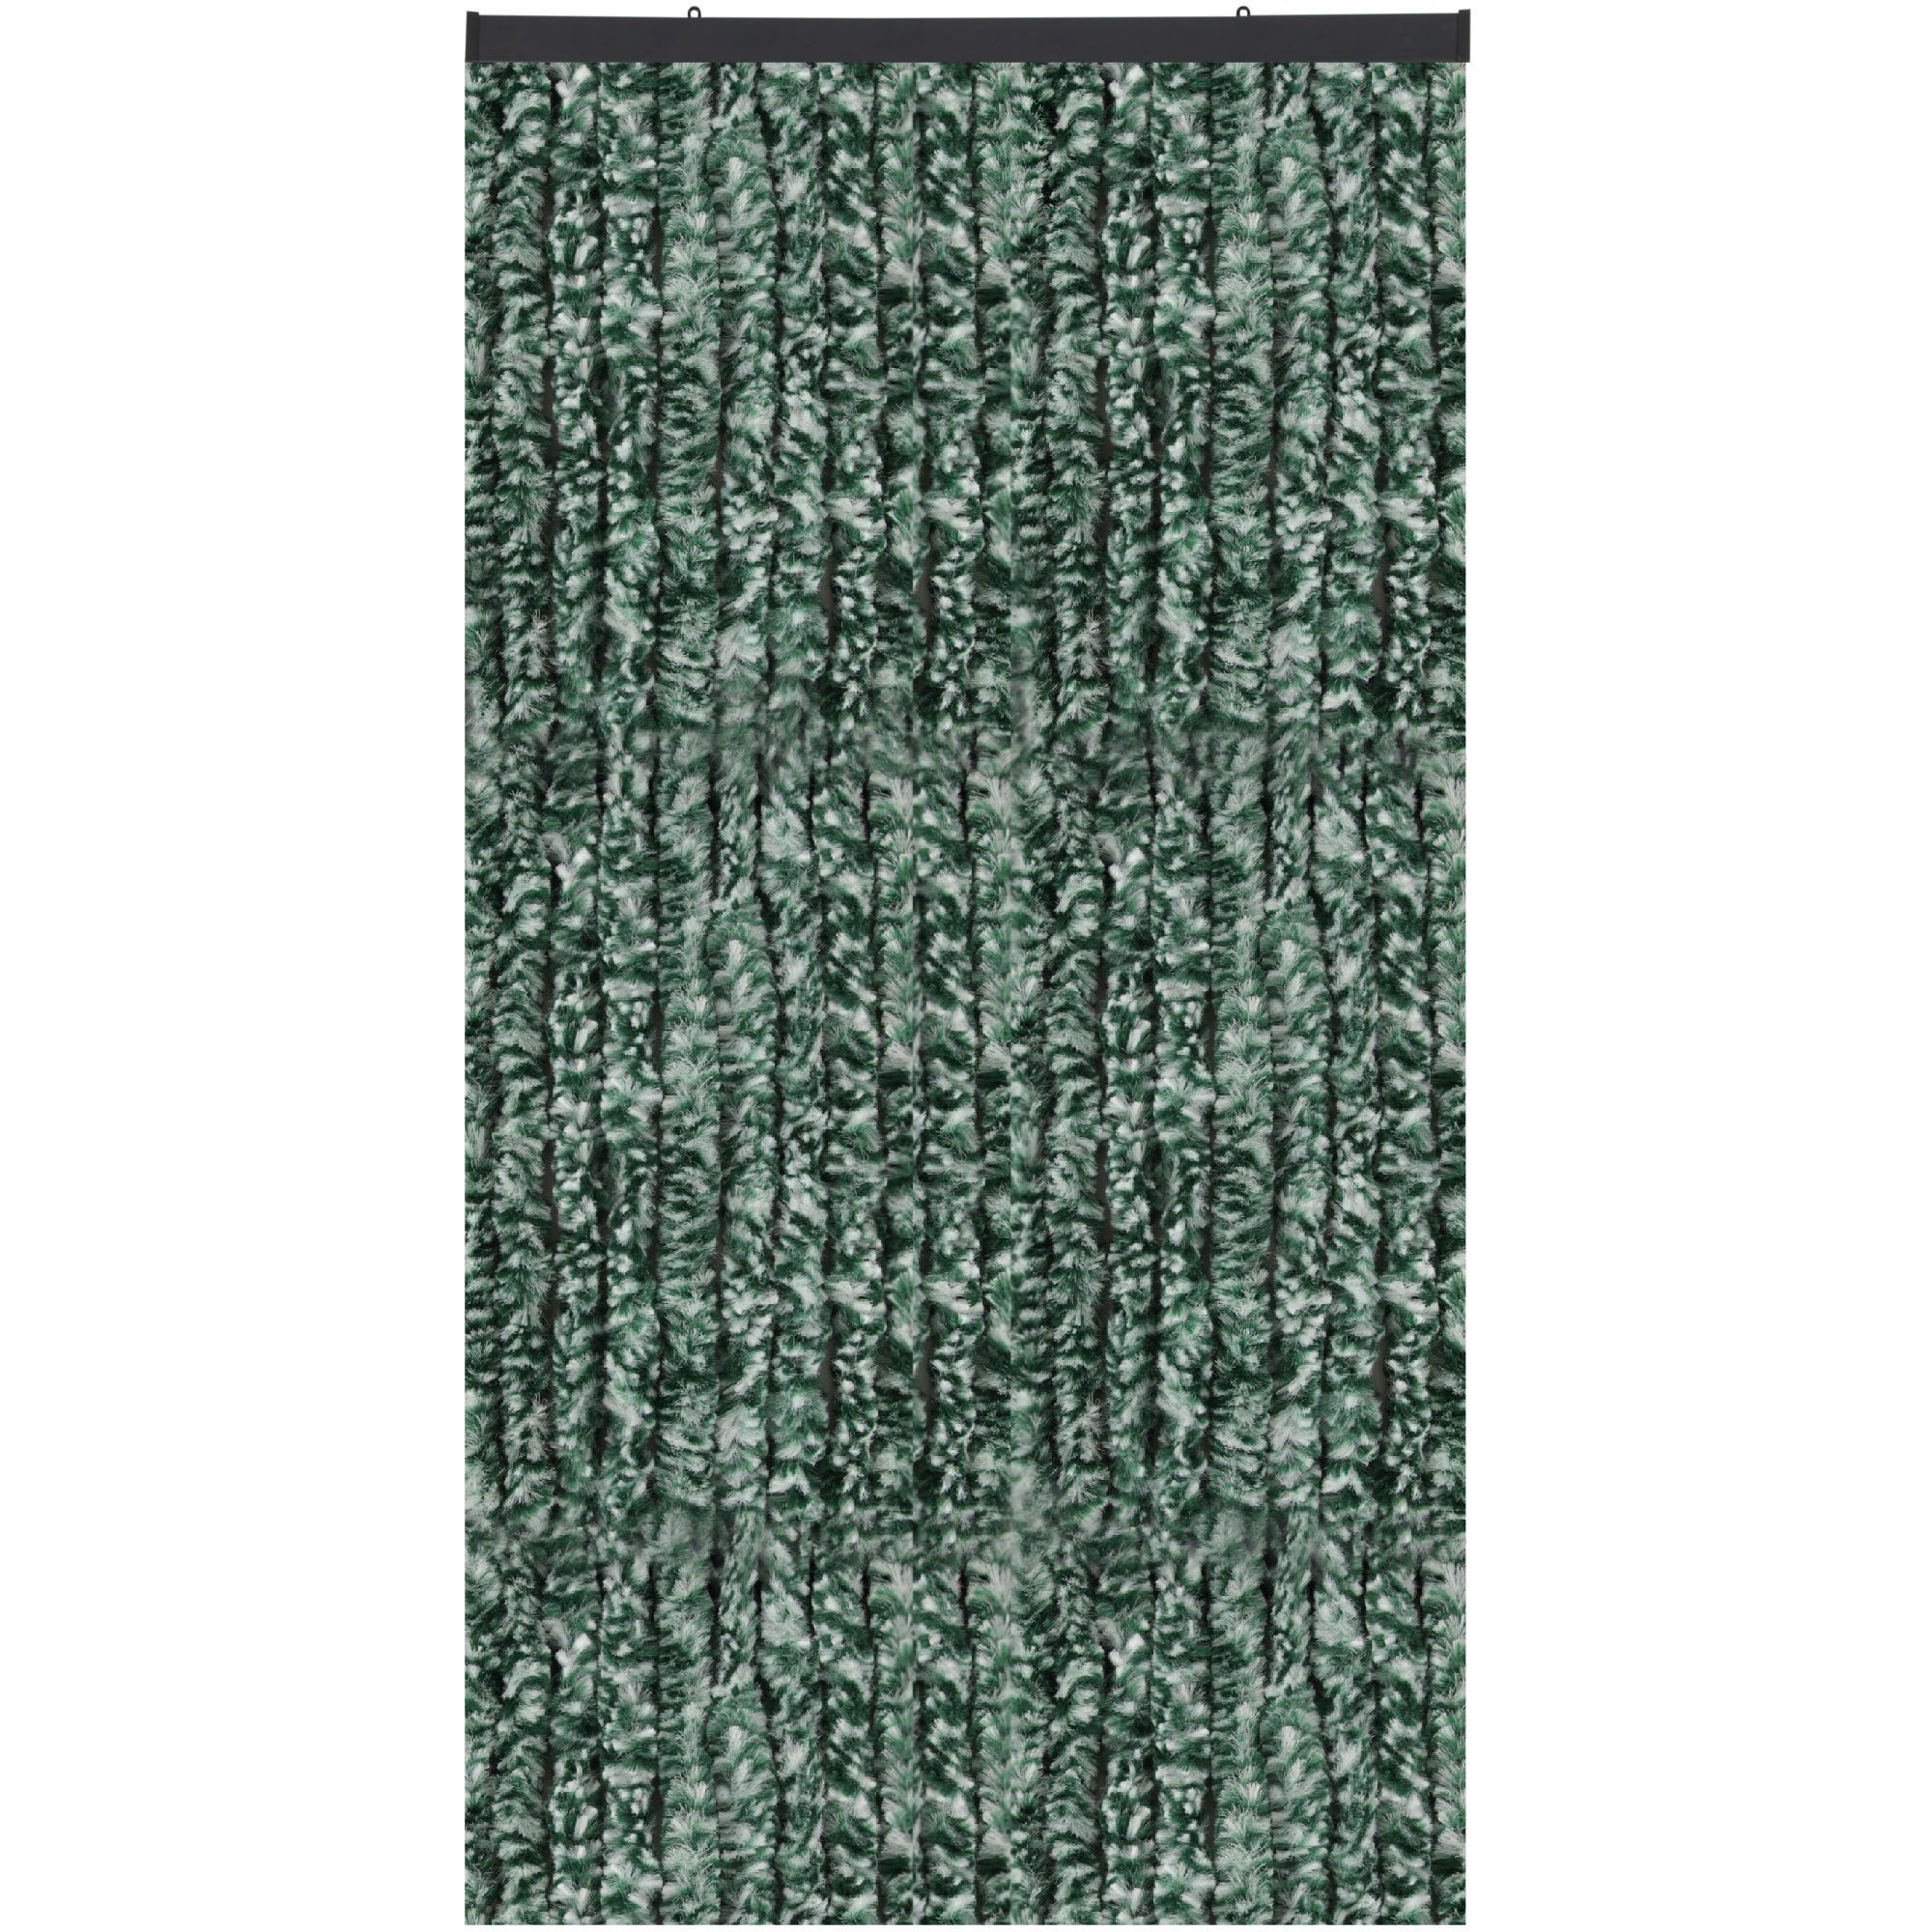 Türvorhang Flauschi, Arsvita, Öse (1 St), Flauschvorhang 160x200 cm in Meliert dunkelgrün - weiß, viele Farben Meliert Dunkelgrün/Weiß